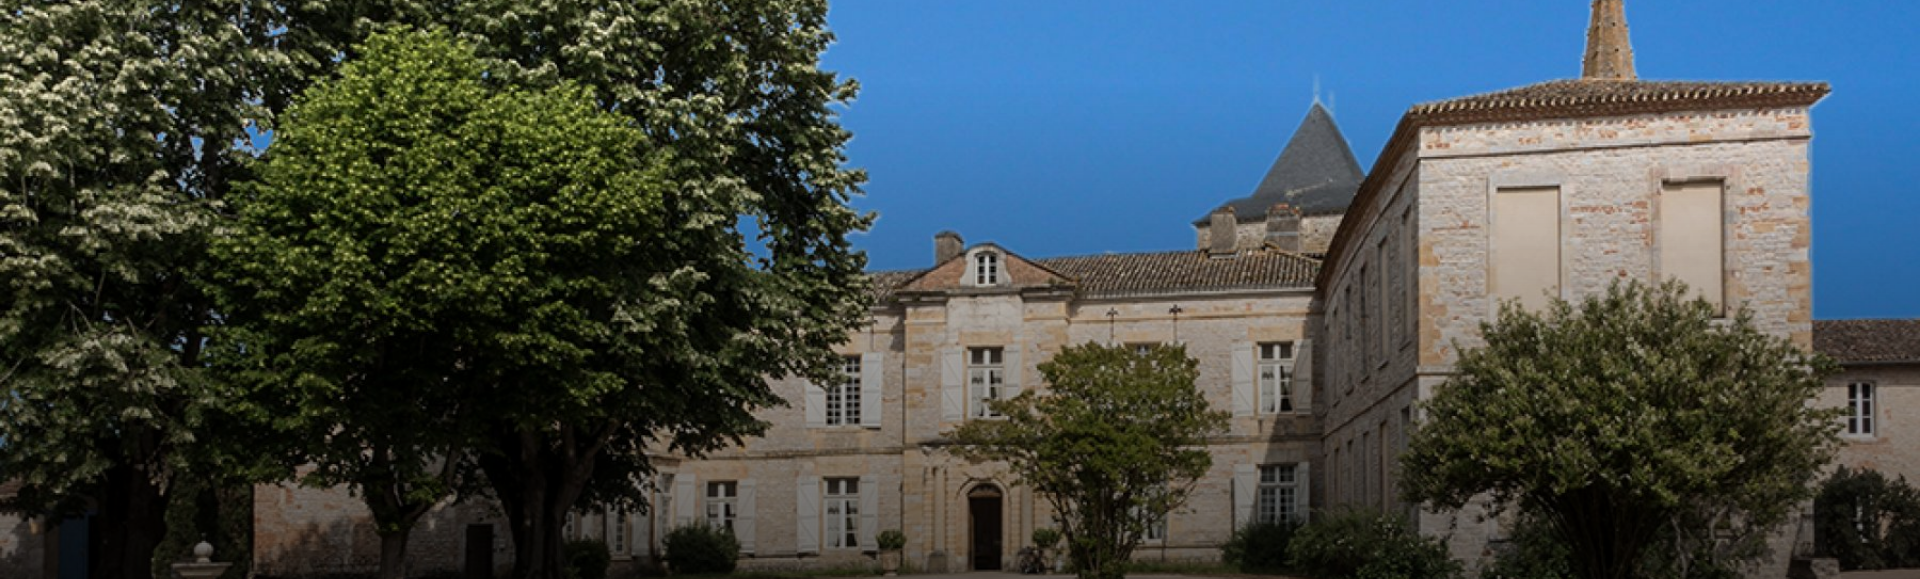 Château de Montricoux Musée Marcel-Lenoir